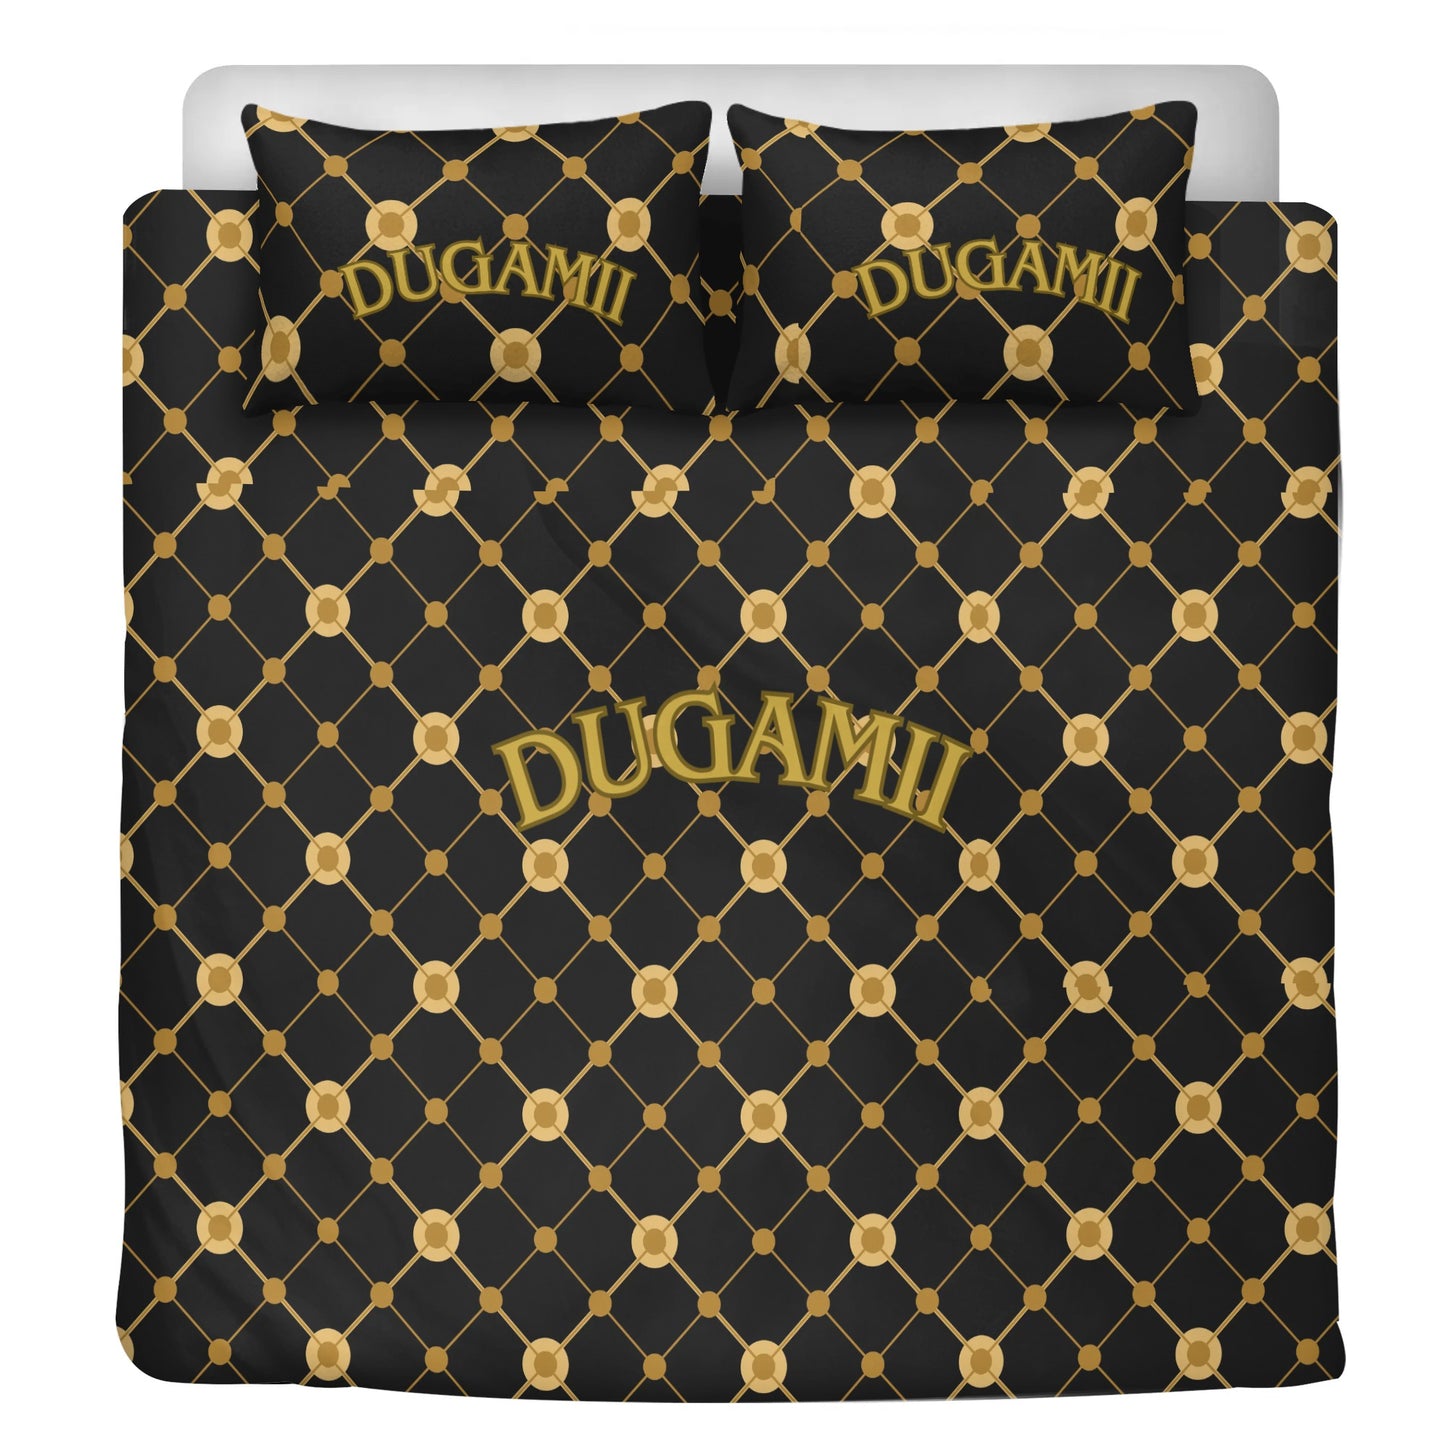 3 Pcs DuGamii Bed Set